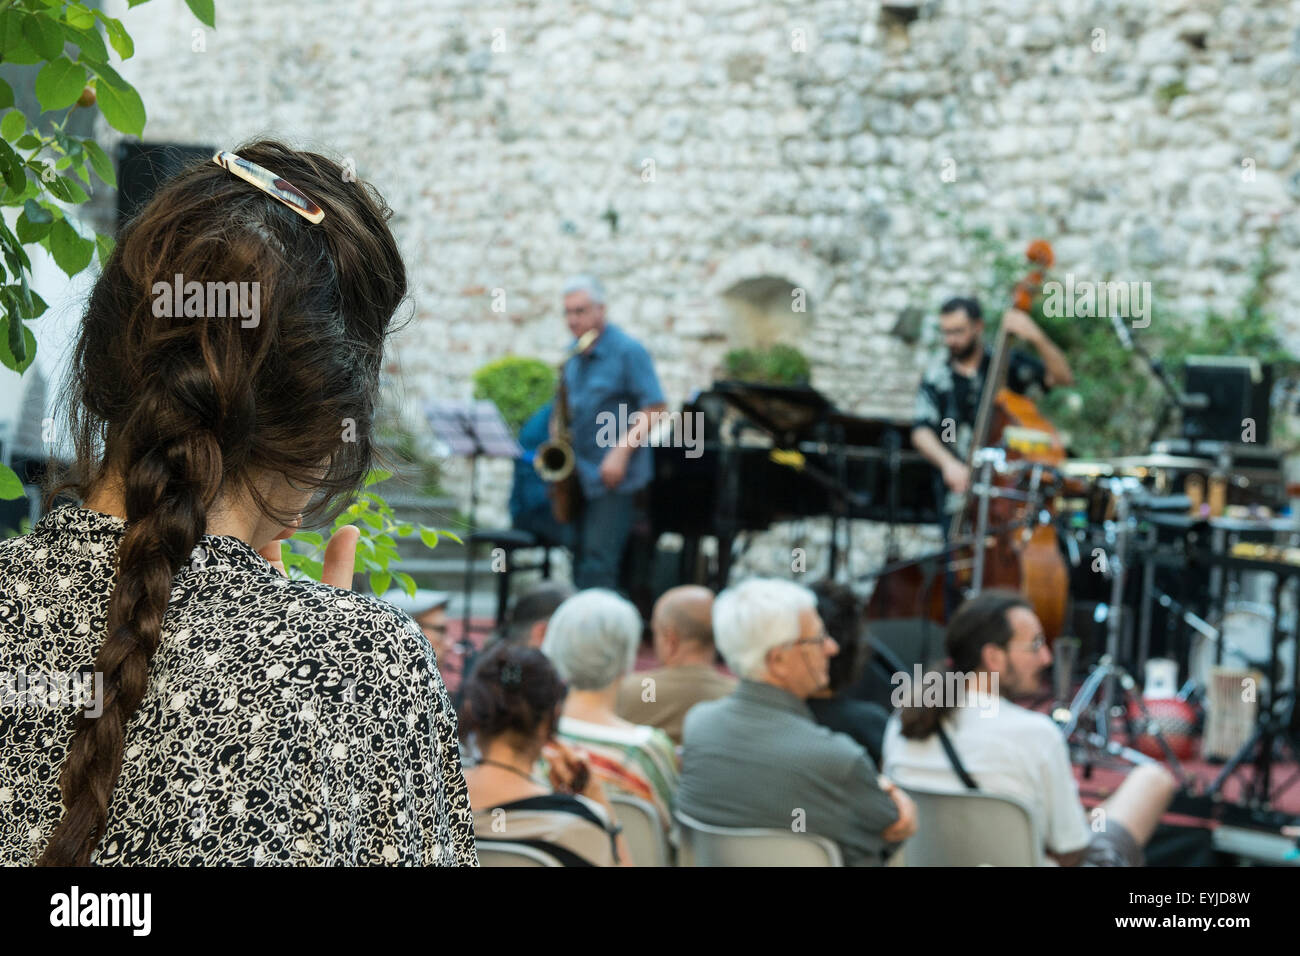 Concierto de jazz en Udine & Jazz Festival 2015 en Udine, Friuli, Italia Foto de stock